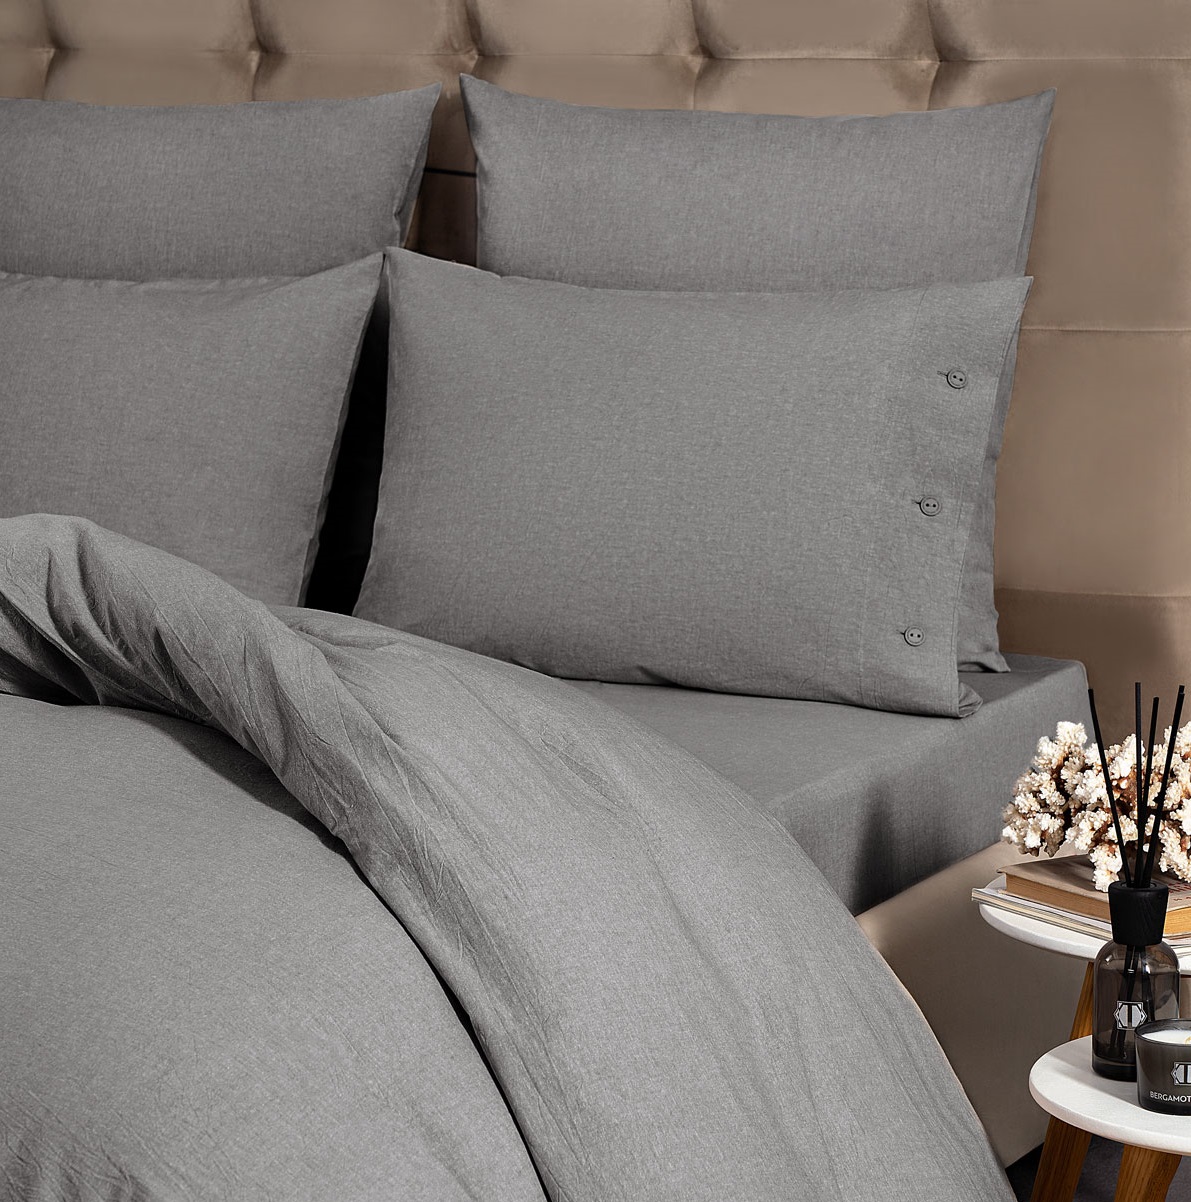 Комплект постельного белья Prime Prive Смоген Двуспальный кинг сайз тёмно-серый, размер Кинг сайз - фото 3